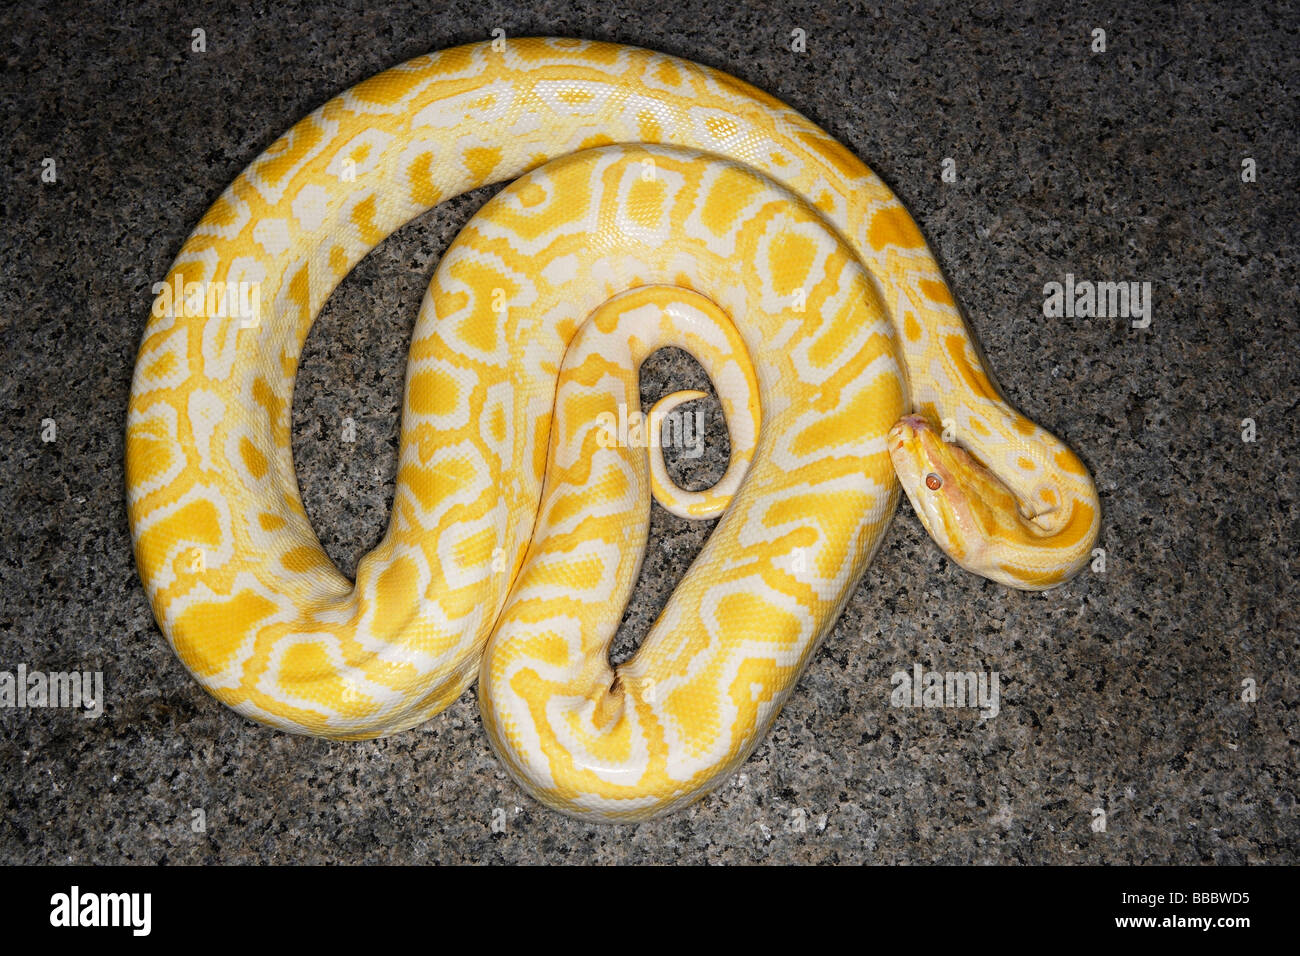 Asian albino python Stock Photo